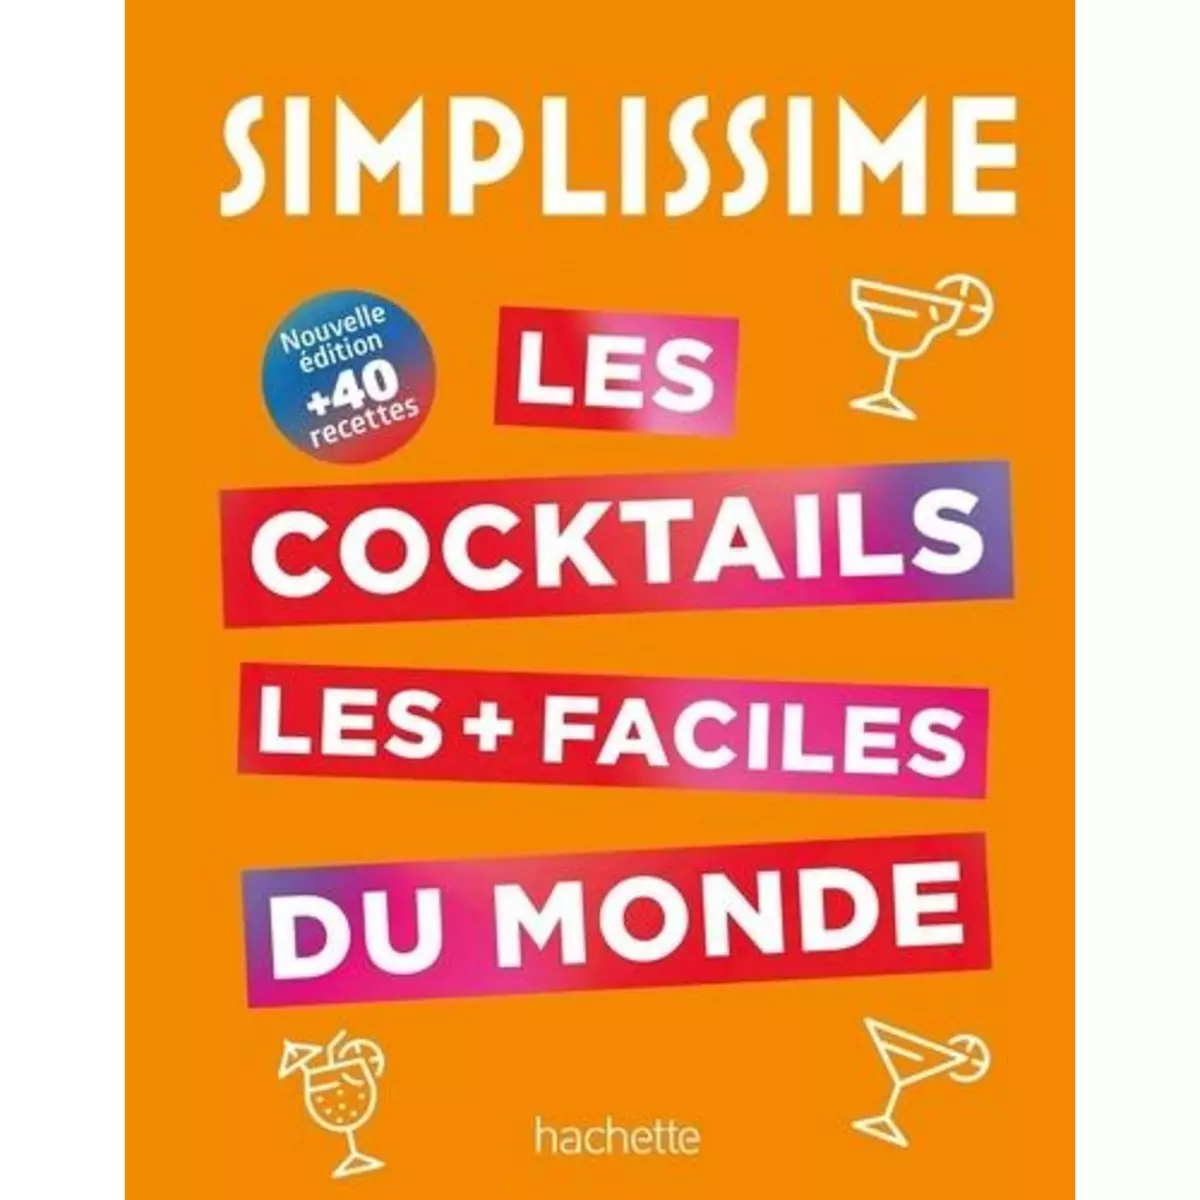  LES COCKTAILS LES + FACILES DU MONDE, Hachette Pratique